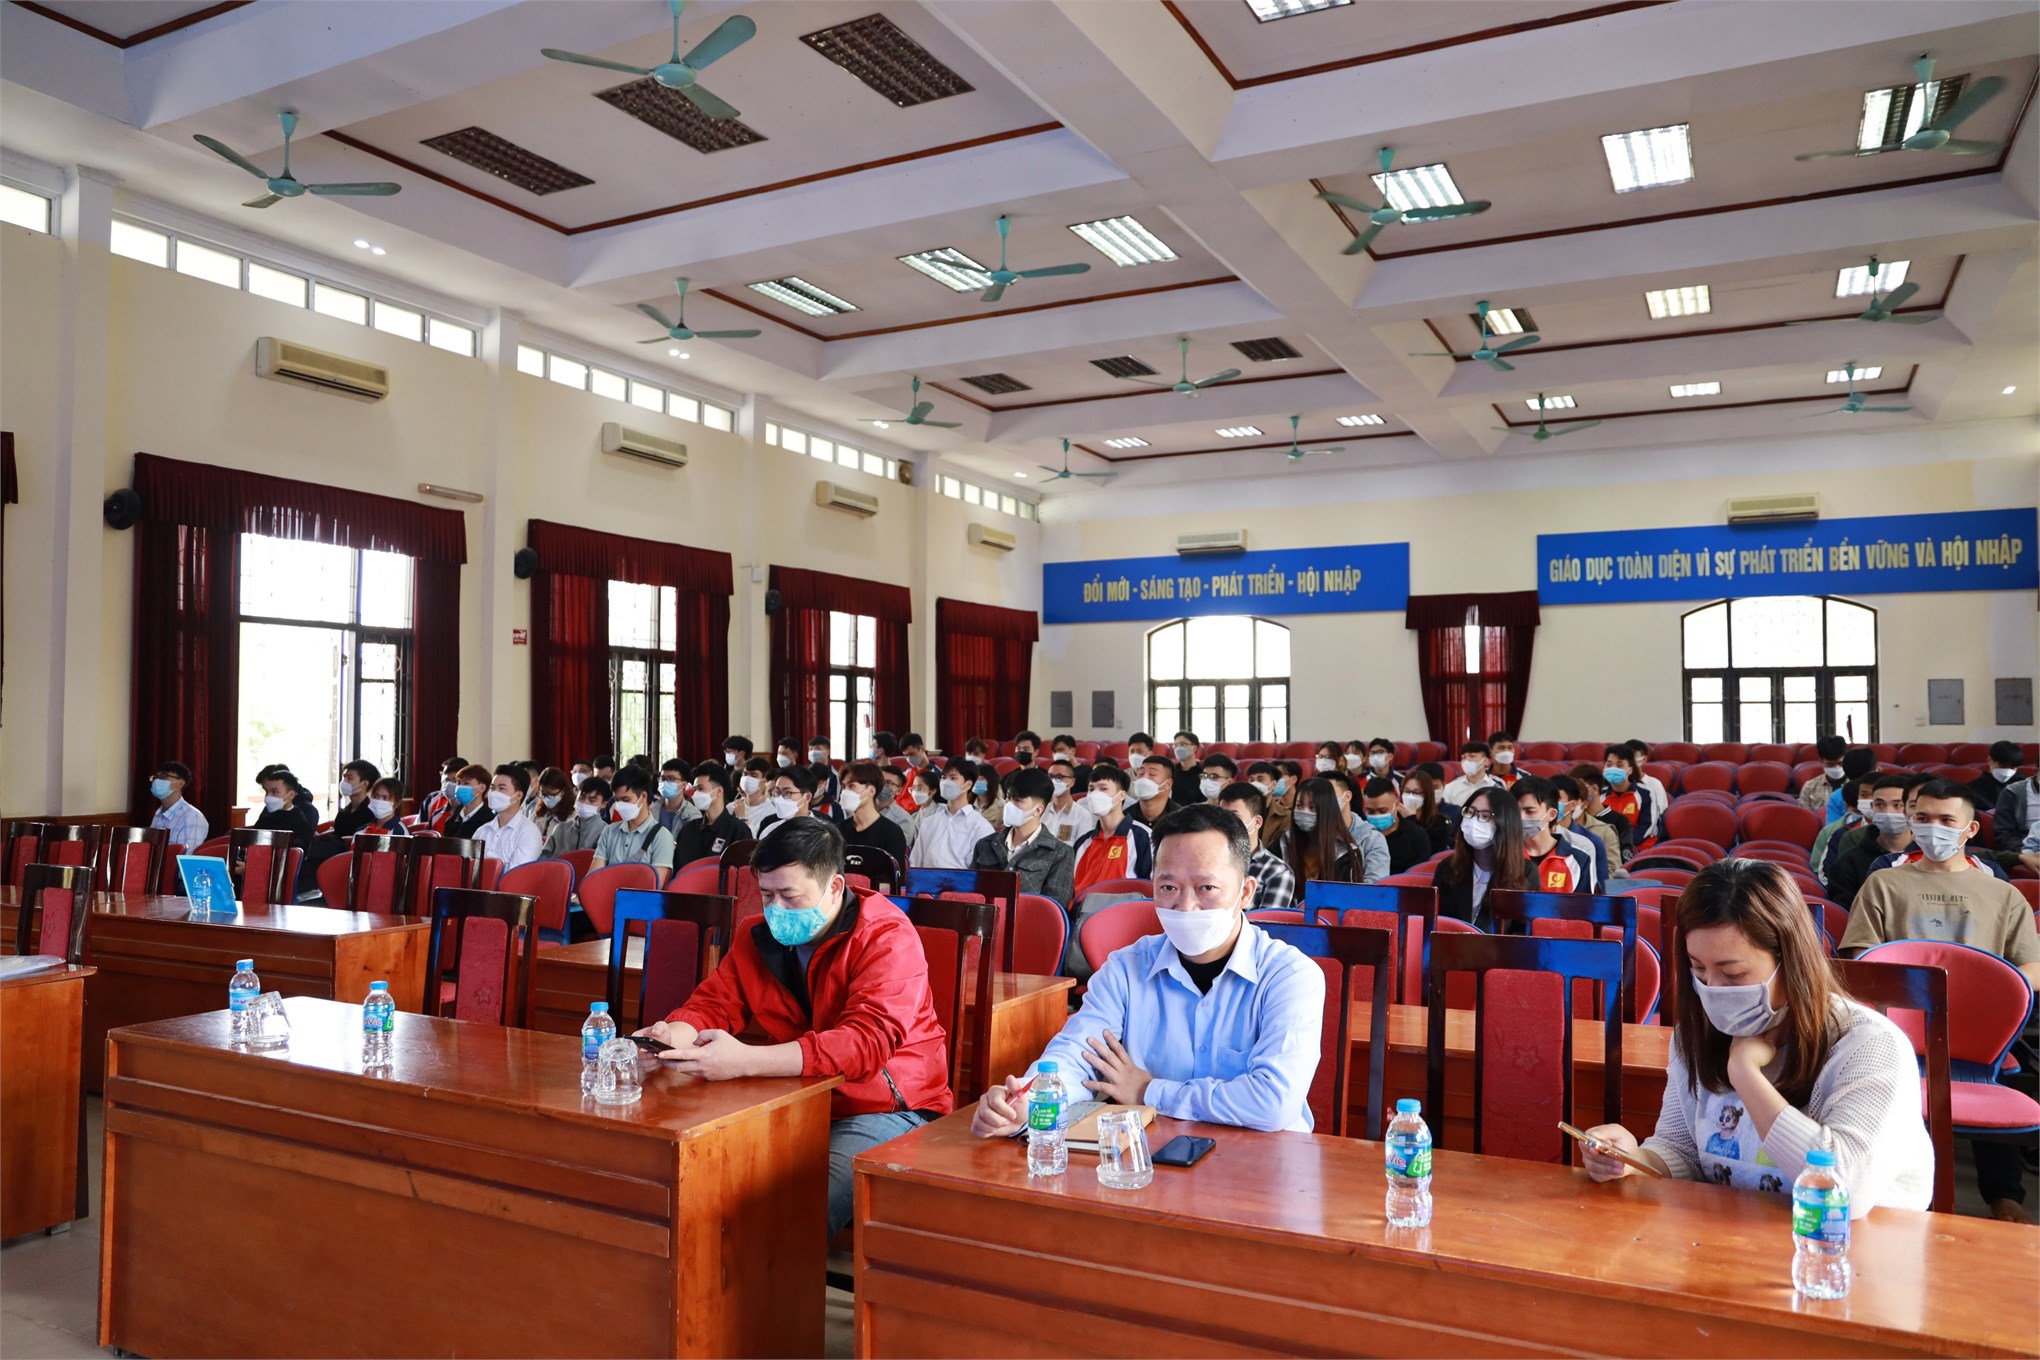 Hơn 150 sinh viên tham dự hội thảo việc làm, tuyển dụng cán bộ nguồn Công ty TNHH New Wing Interconnect Technology